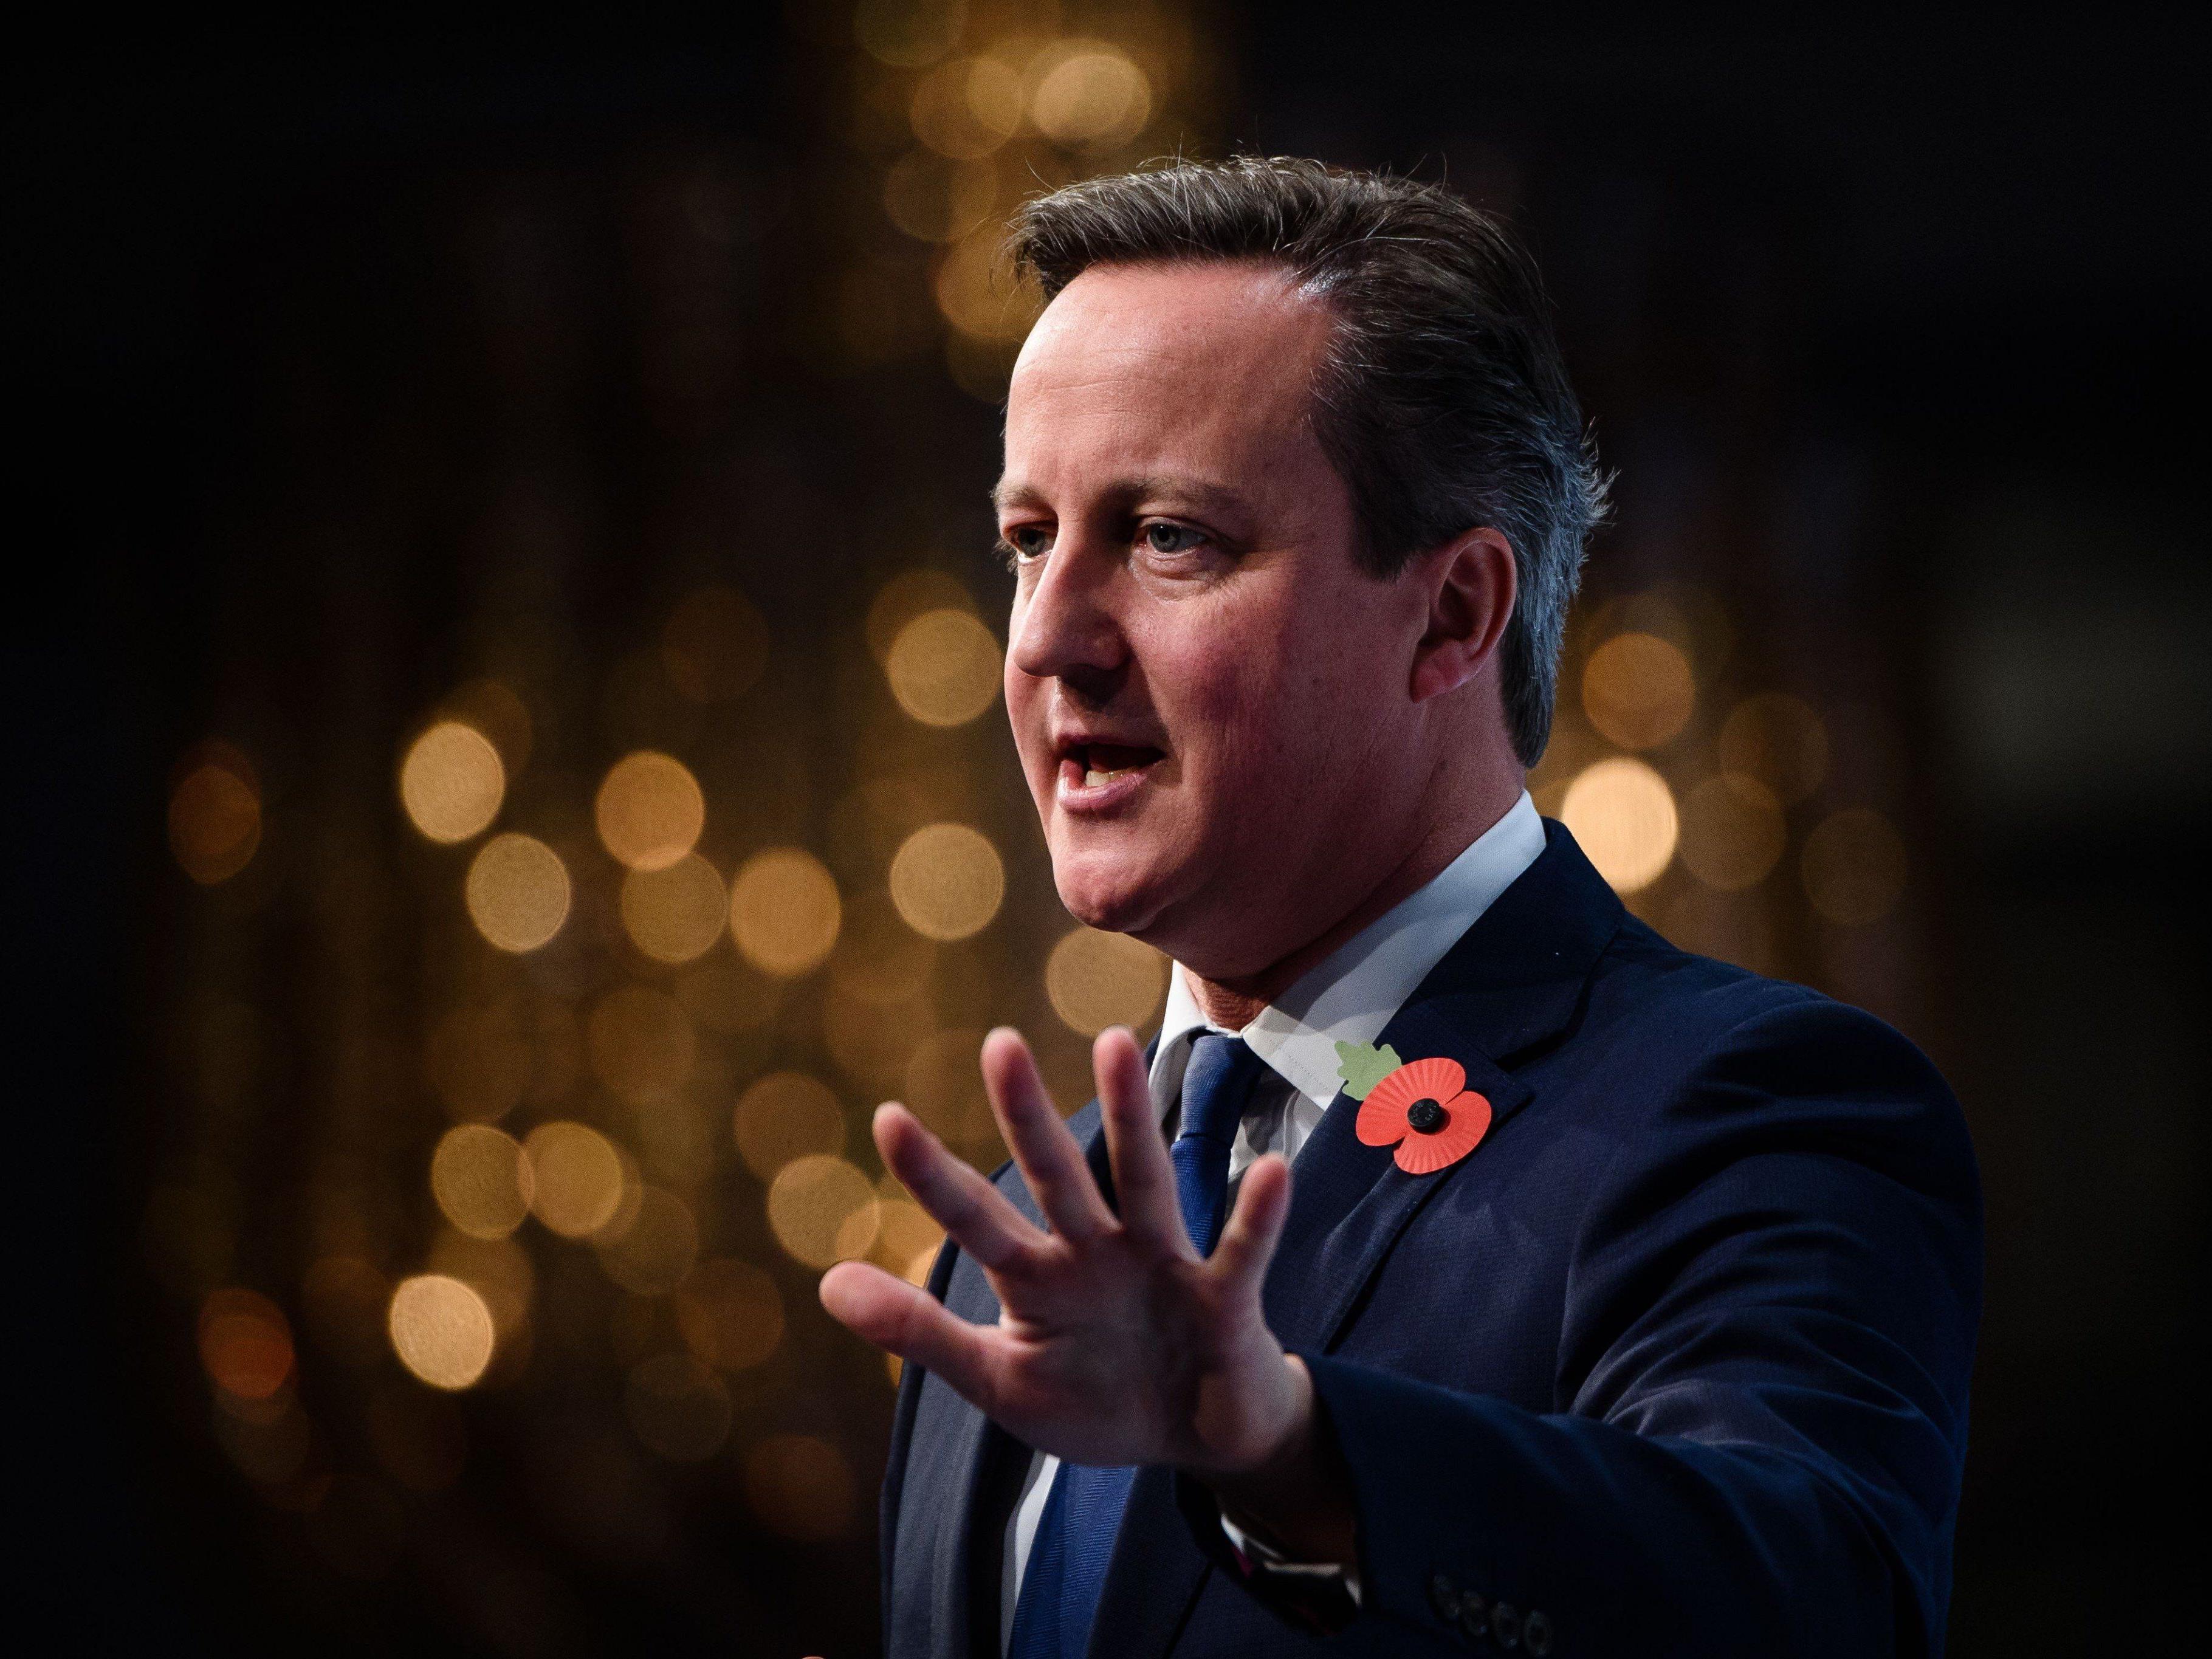 Sonst kommt der Brexit: Cameron fordert deutliche Kursänderungen von EU